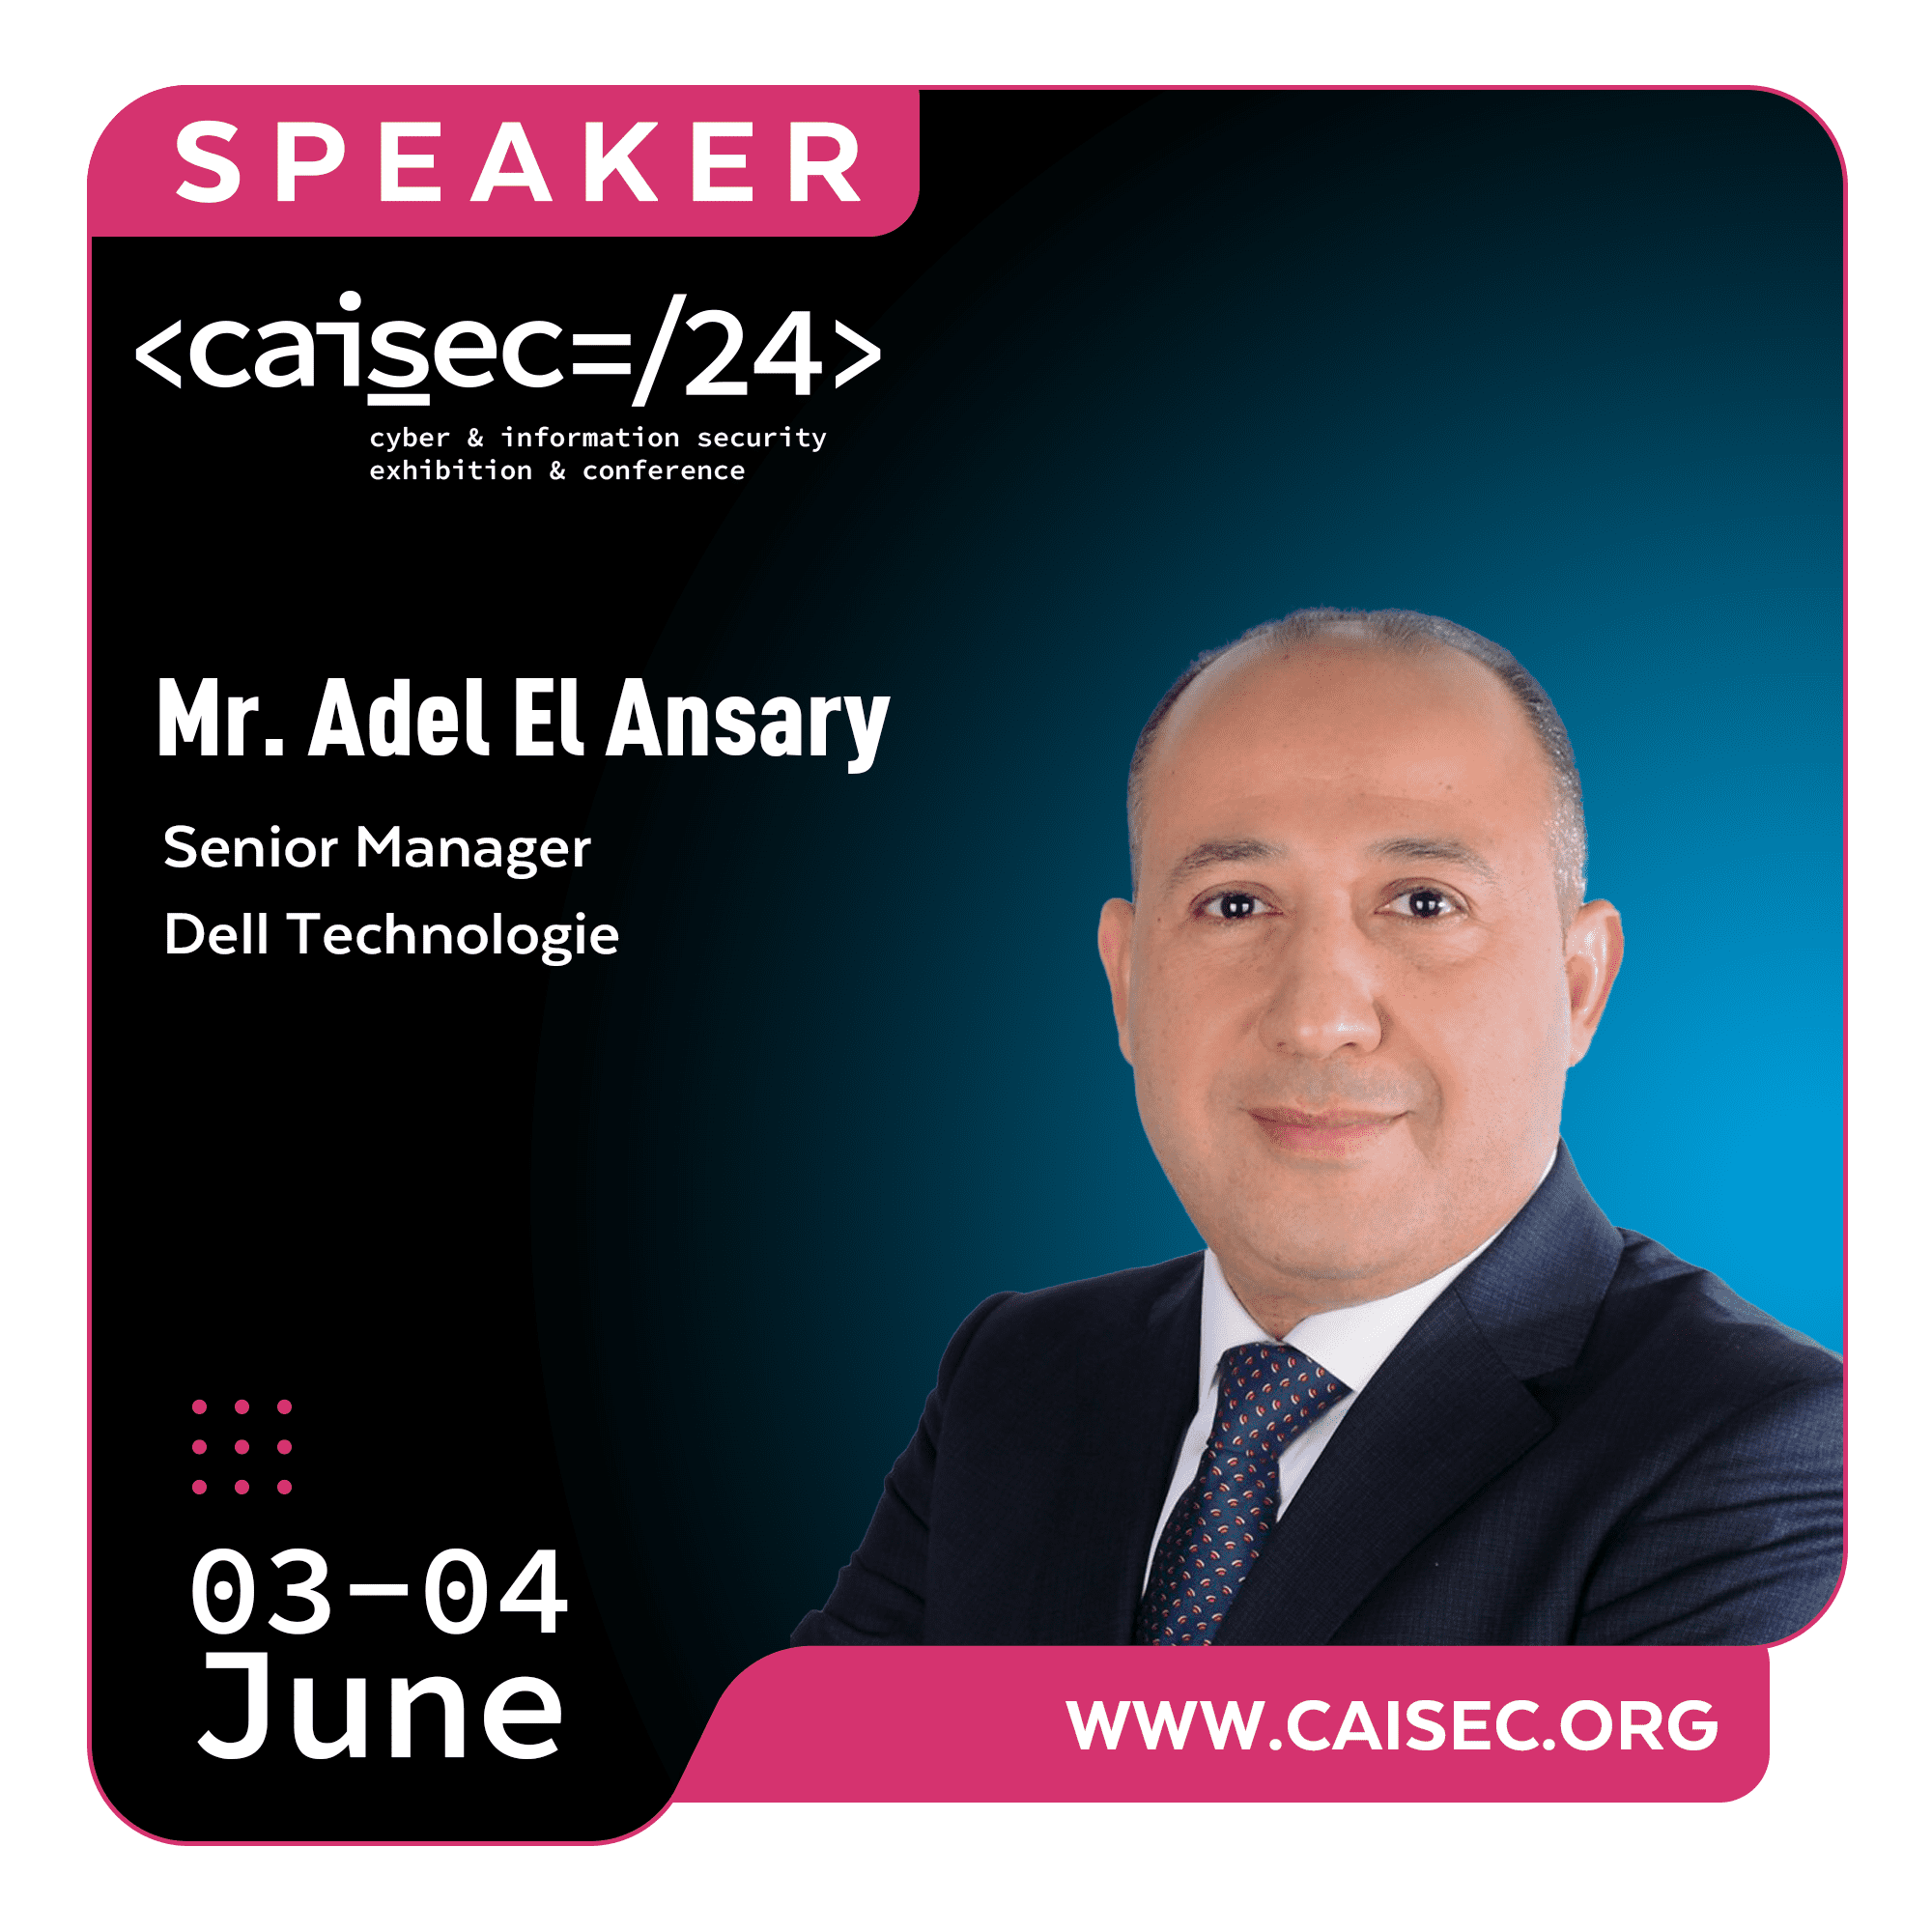 Adel El Ansary (Dell Technology)